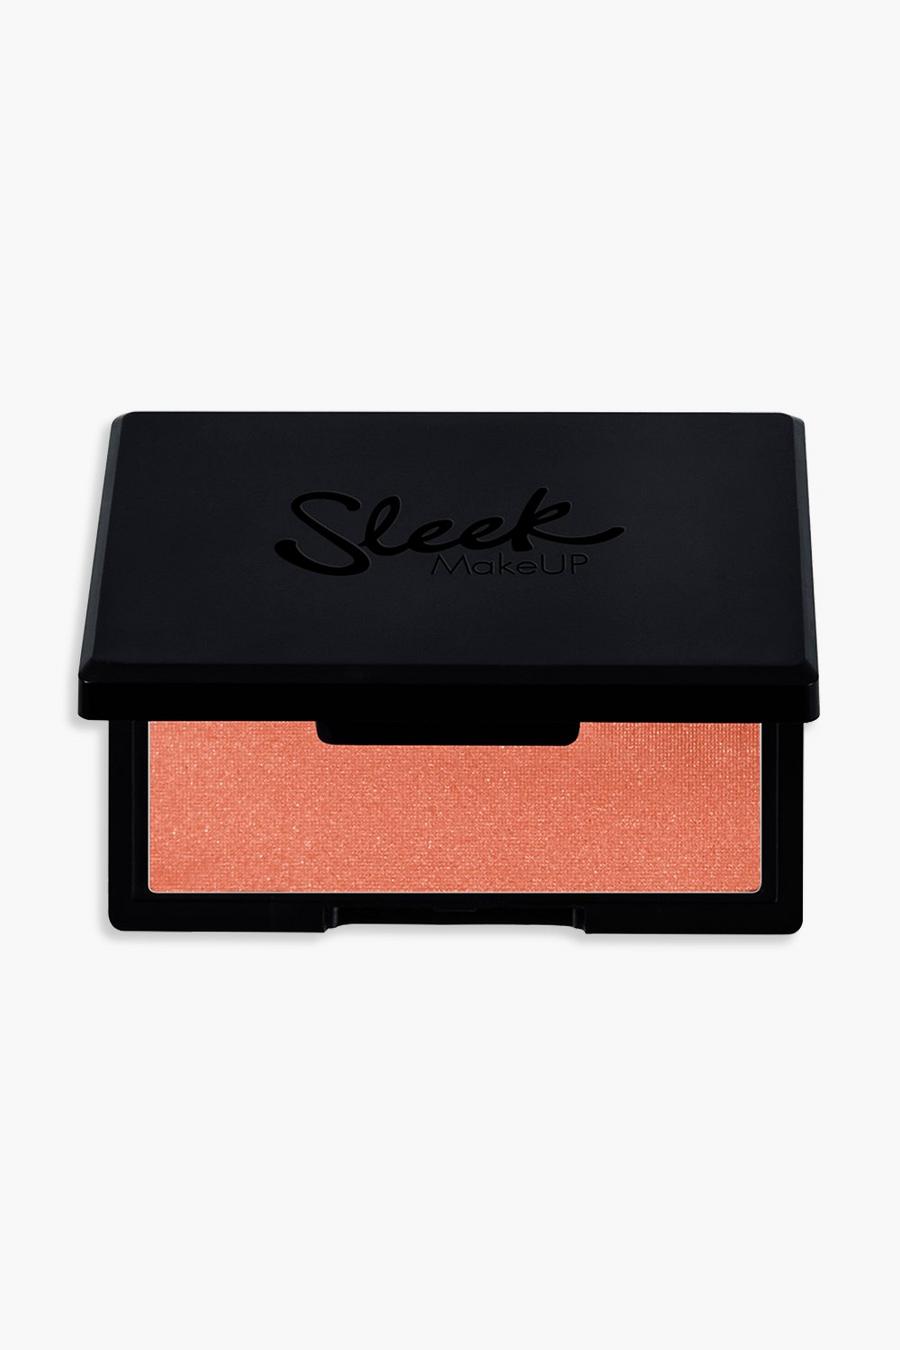 Sleek MakeUp - Blush - Terracotta image number 1